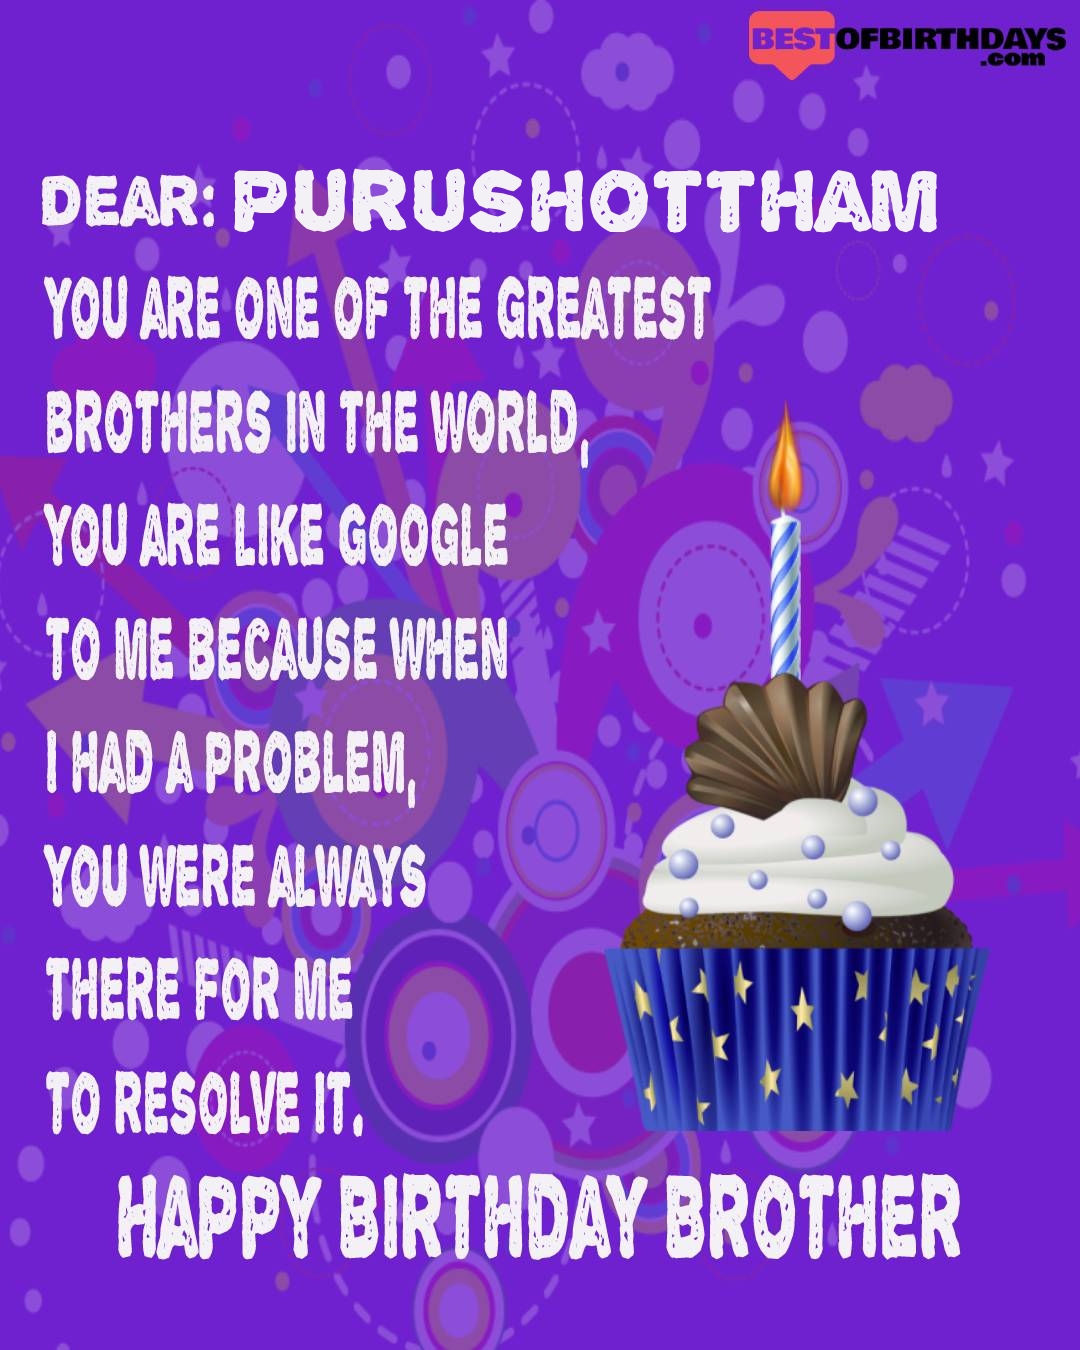 Happy birthday purushottham bhai brother bro